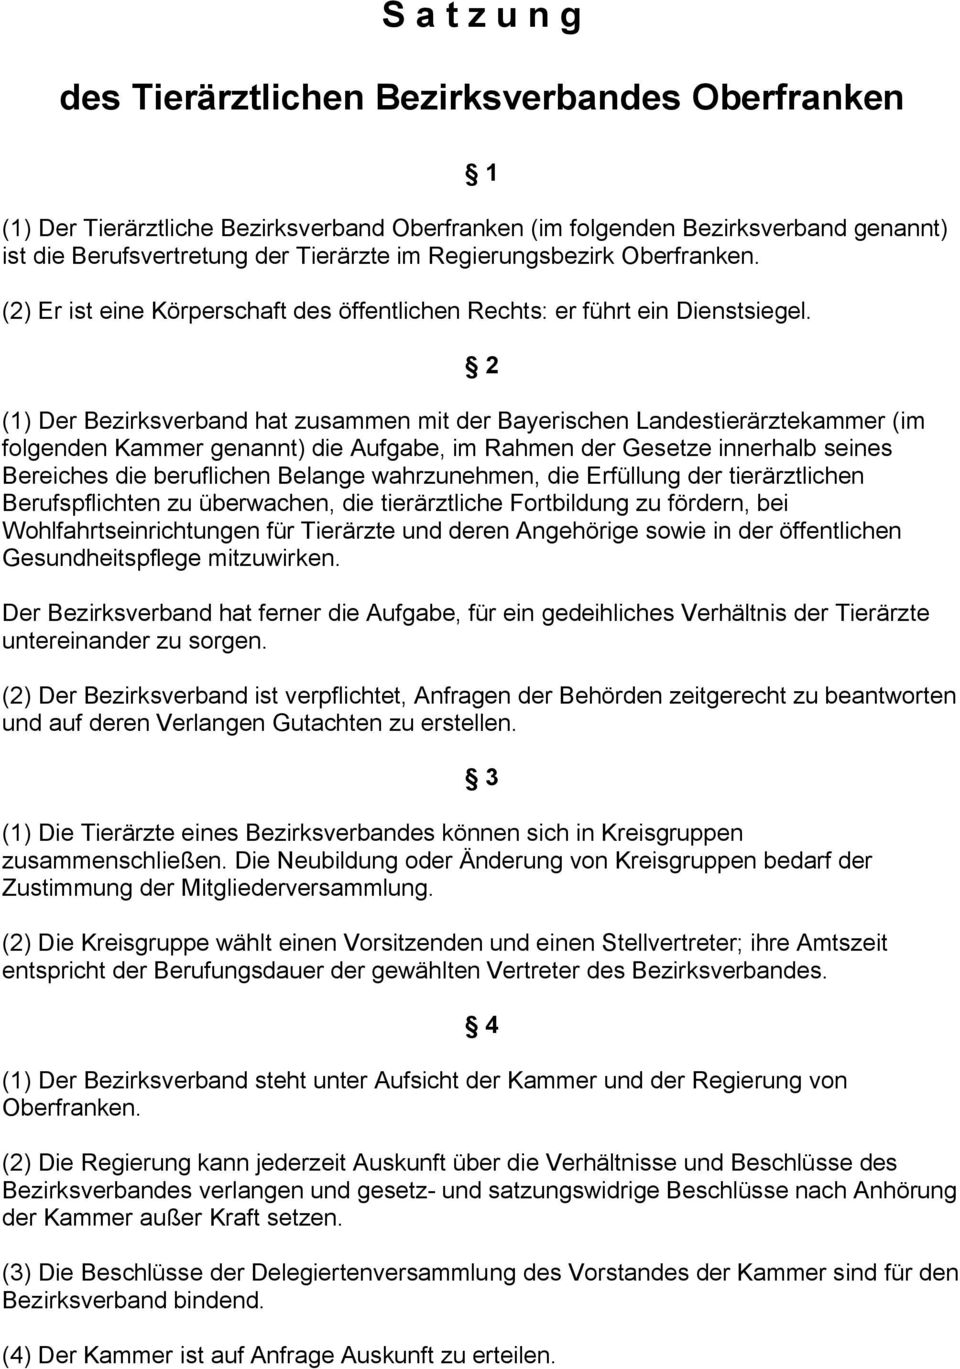 (1) Der Bezirksverband hat zusammen mit der Bayerischen Landestierärztekammer (im folgenden Kammer genannt) die Aufgabe, im Rahmen der Gesetze innerhalb seines Bereiches die beruflichen Belange